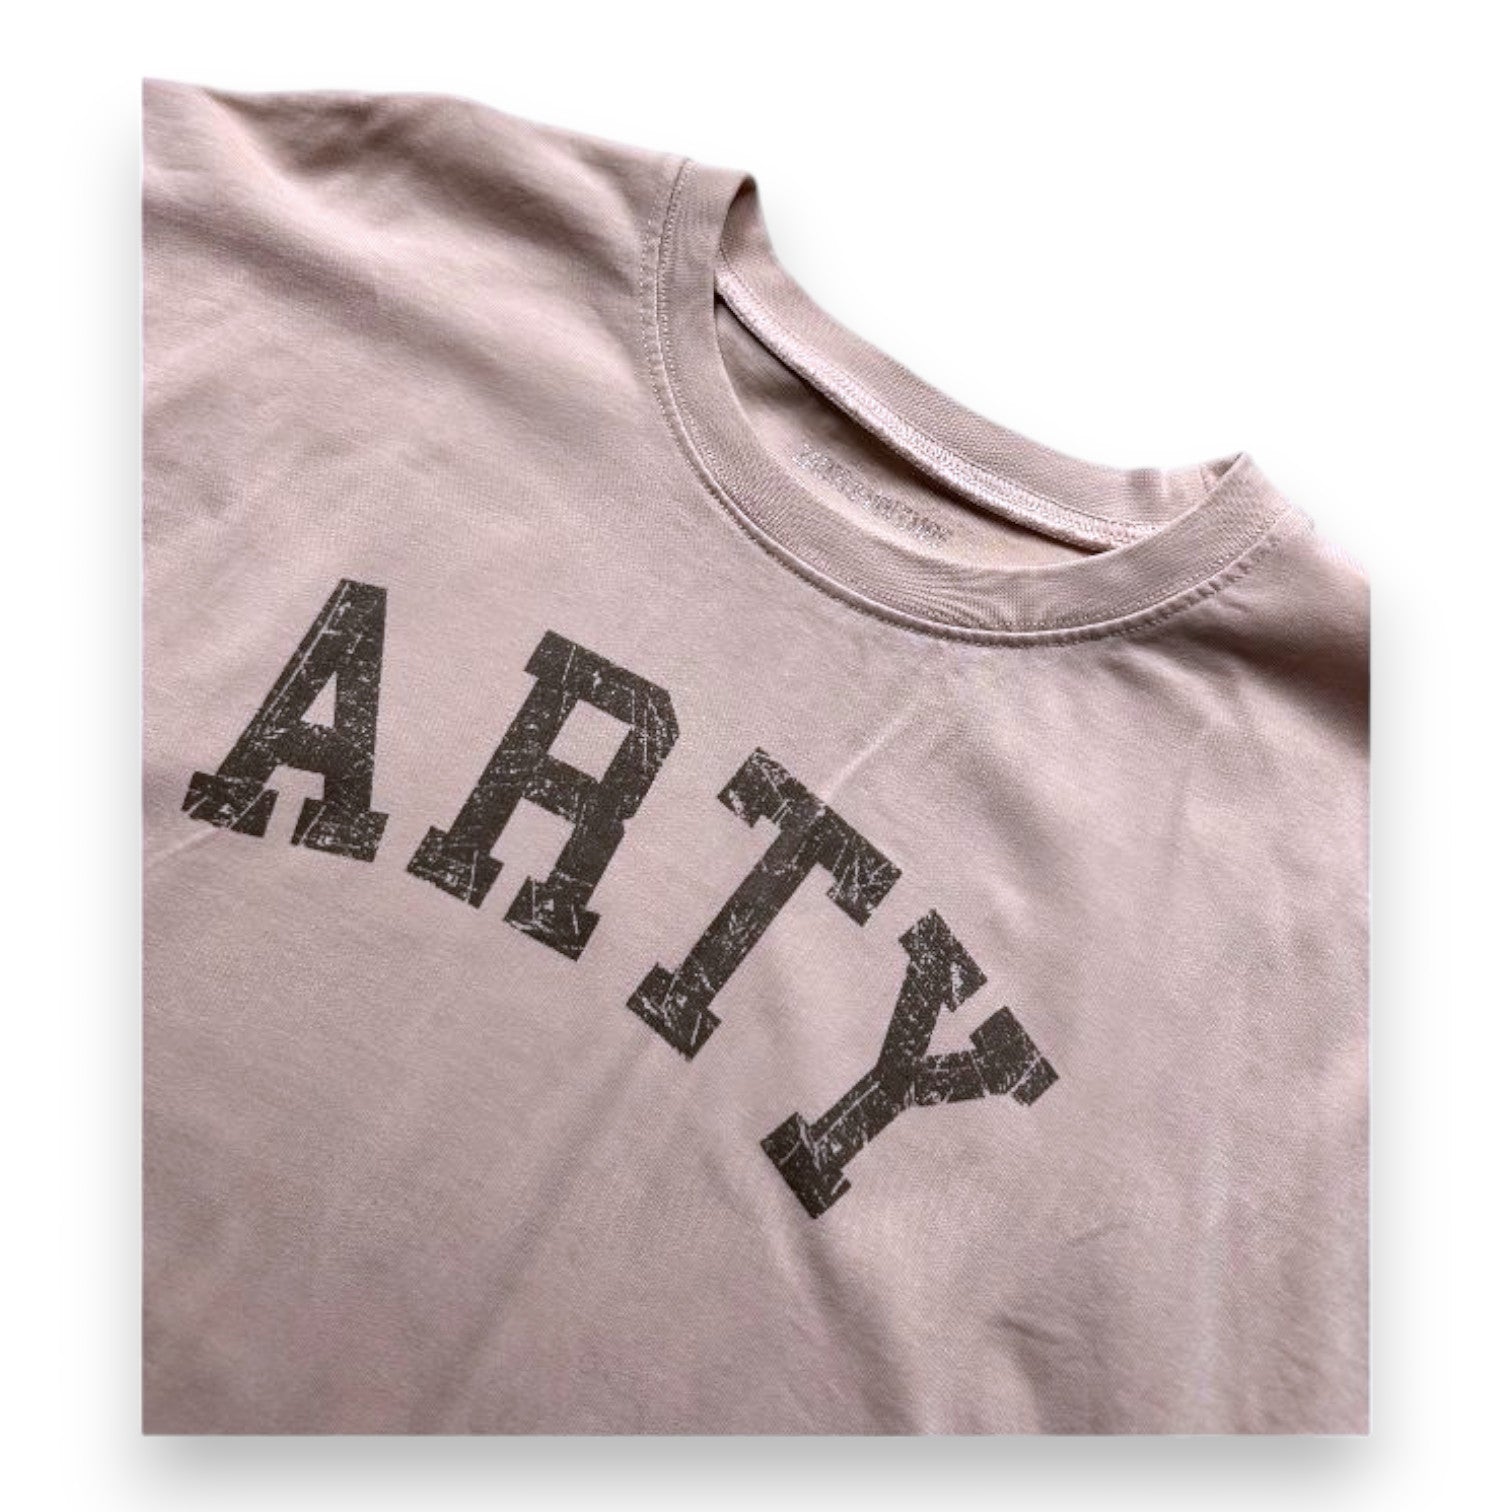 ZADIG & VOLTAIRE - T-shirt à manches courtes rose avec imprimé "ARTY" - 12 ans